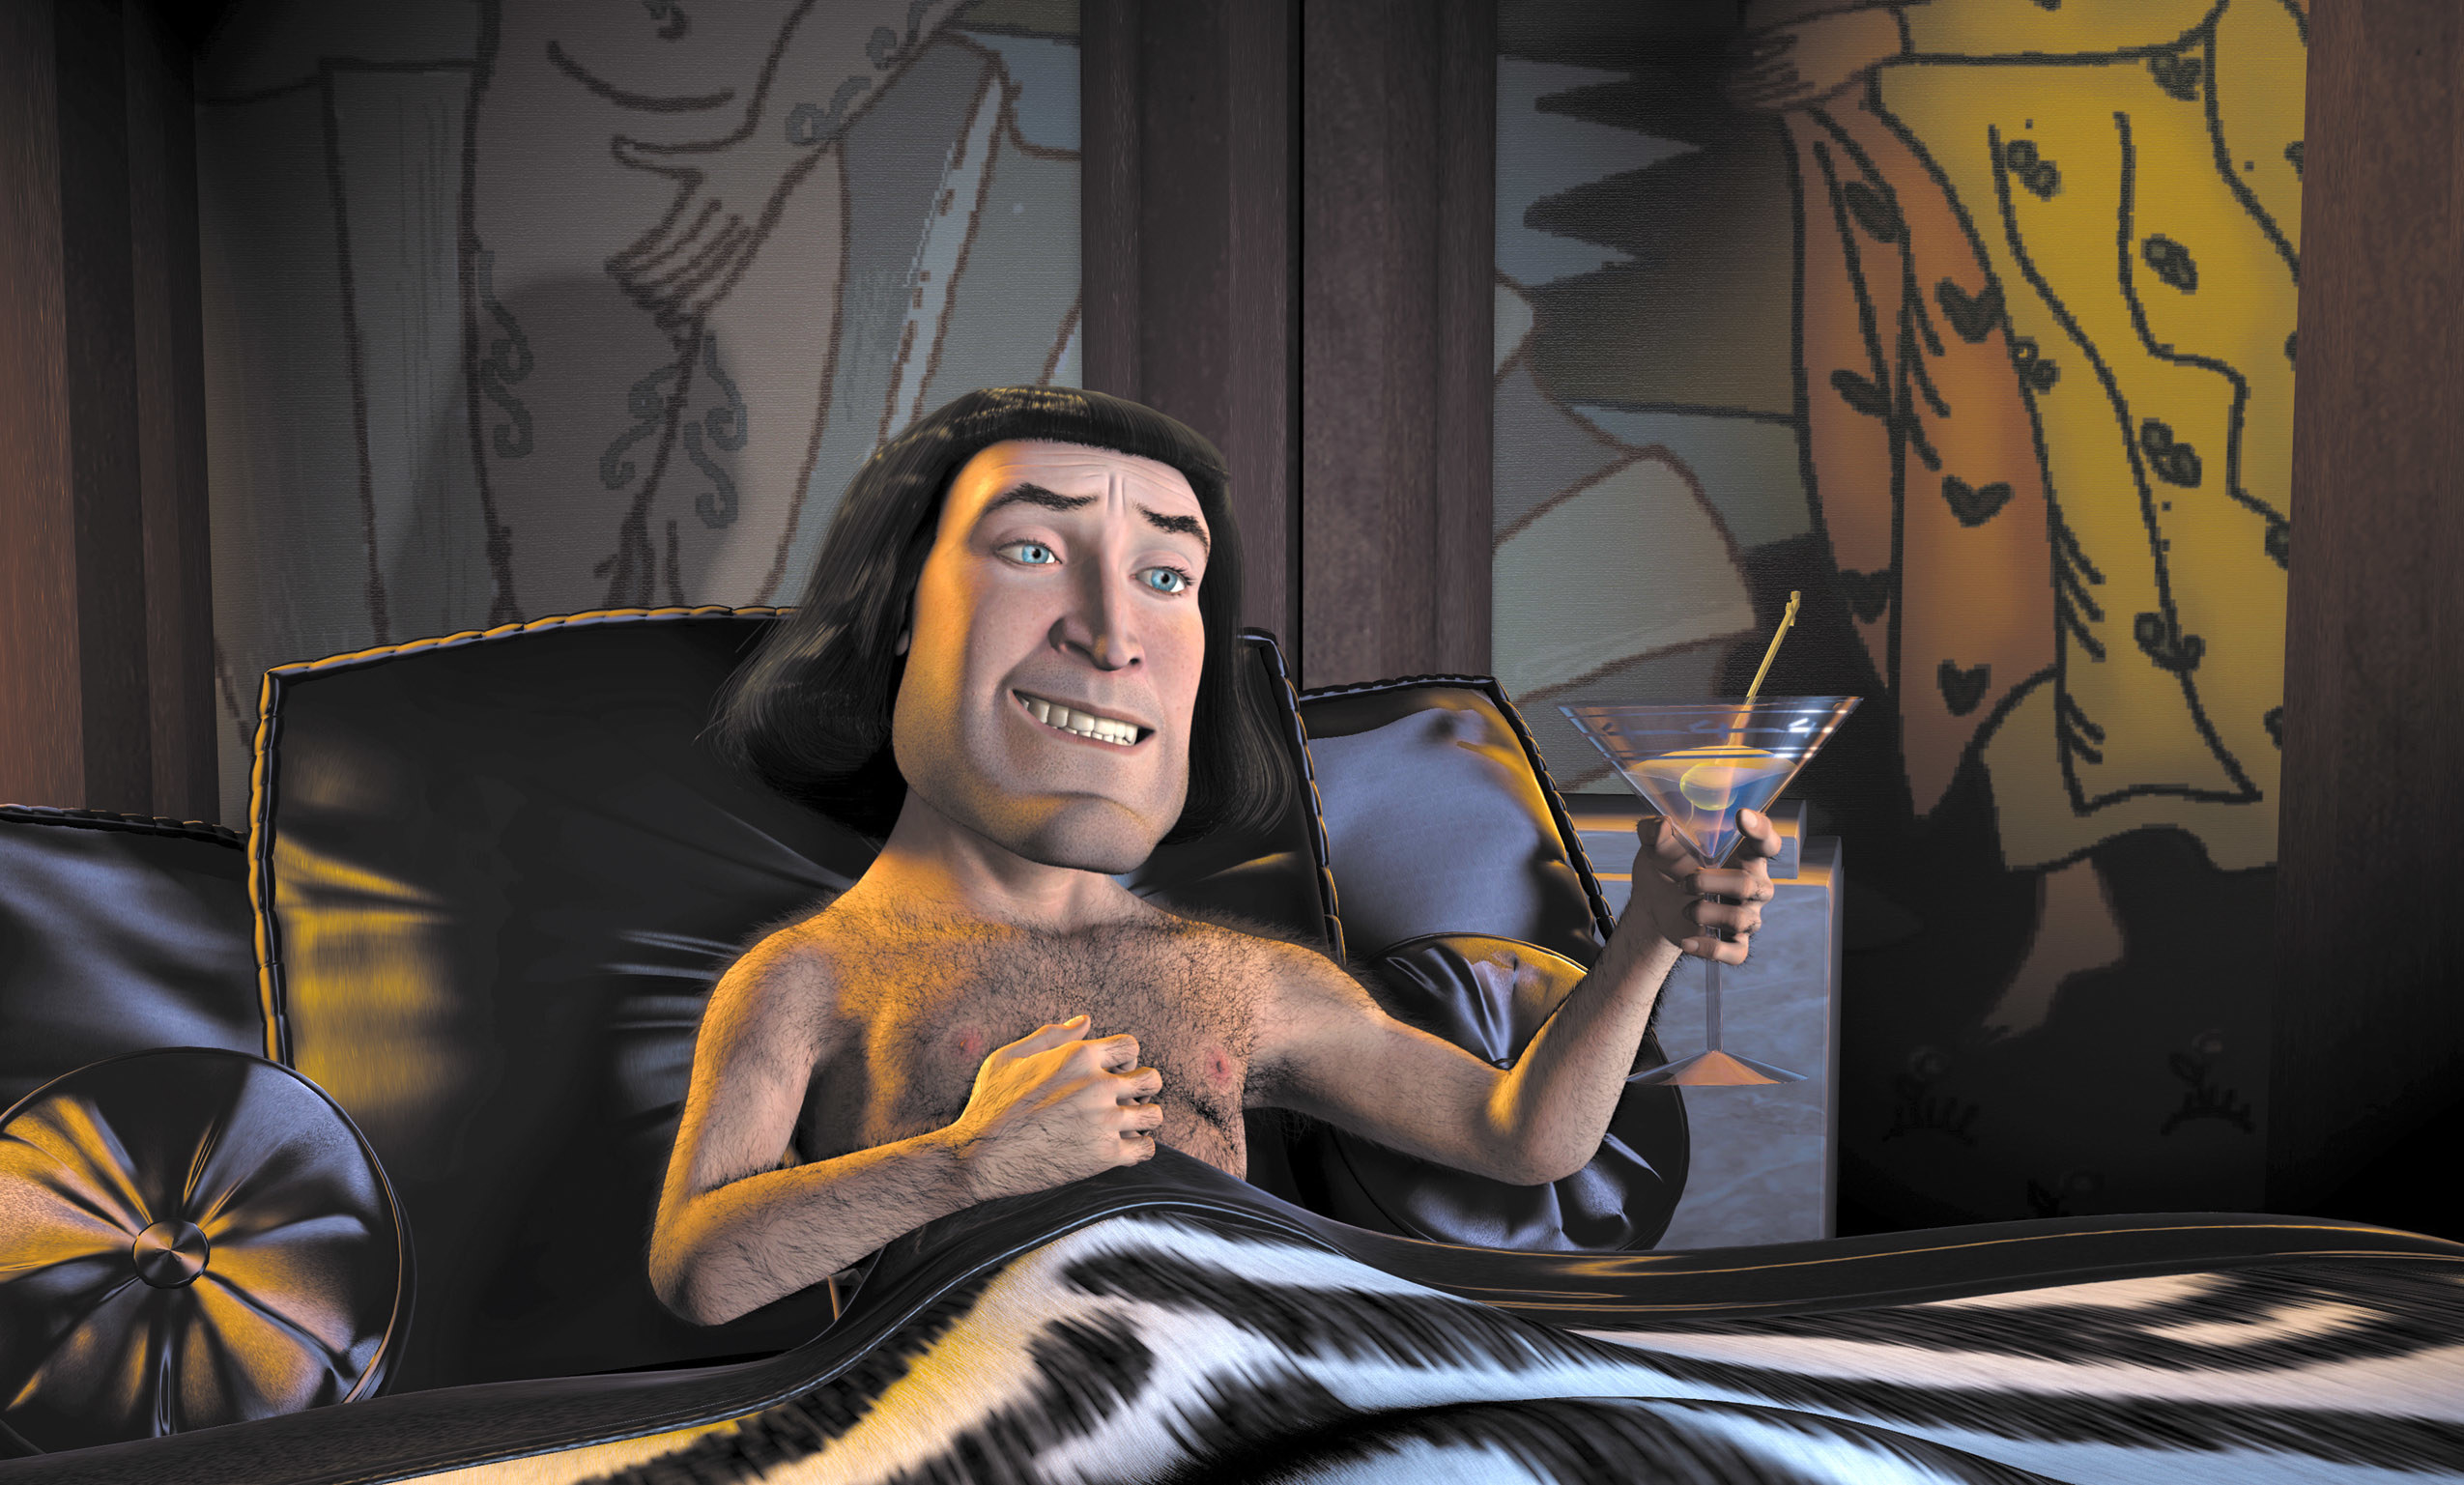 Lord Farquaad in bed enjoying a martini